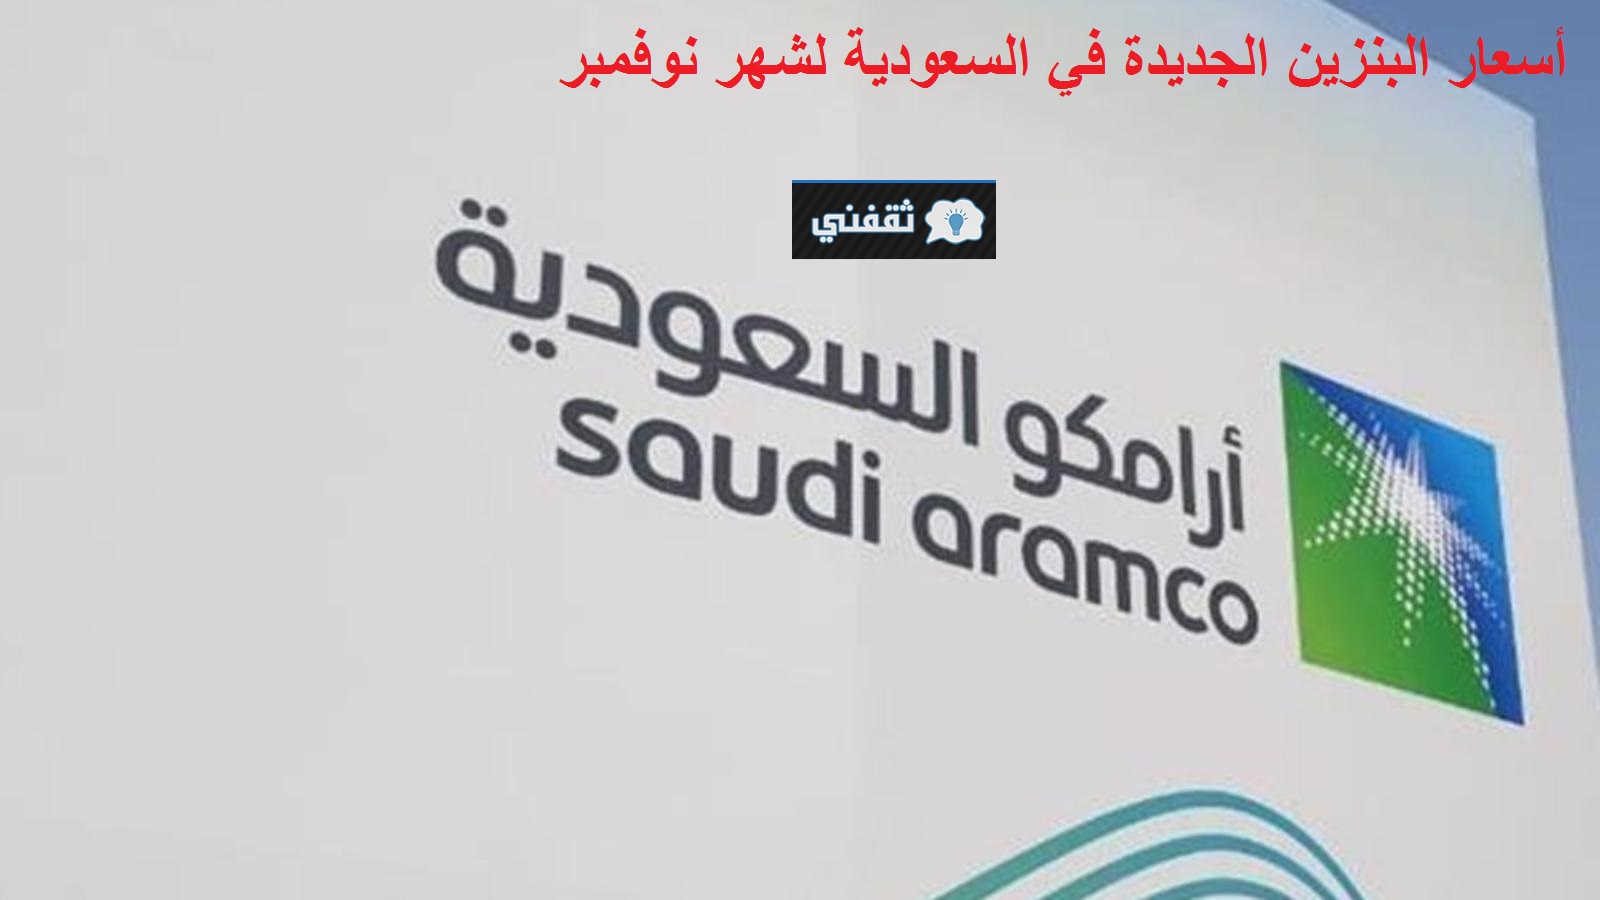 “أرامكو” تنشر أسعار البنزين الجديدة في السعودية شهر نوفمبر 2021 والتطبيق من صباح الغد الخميس